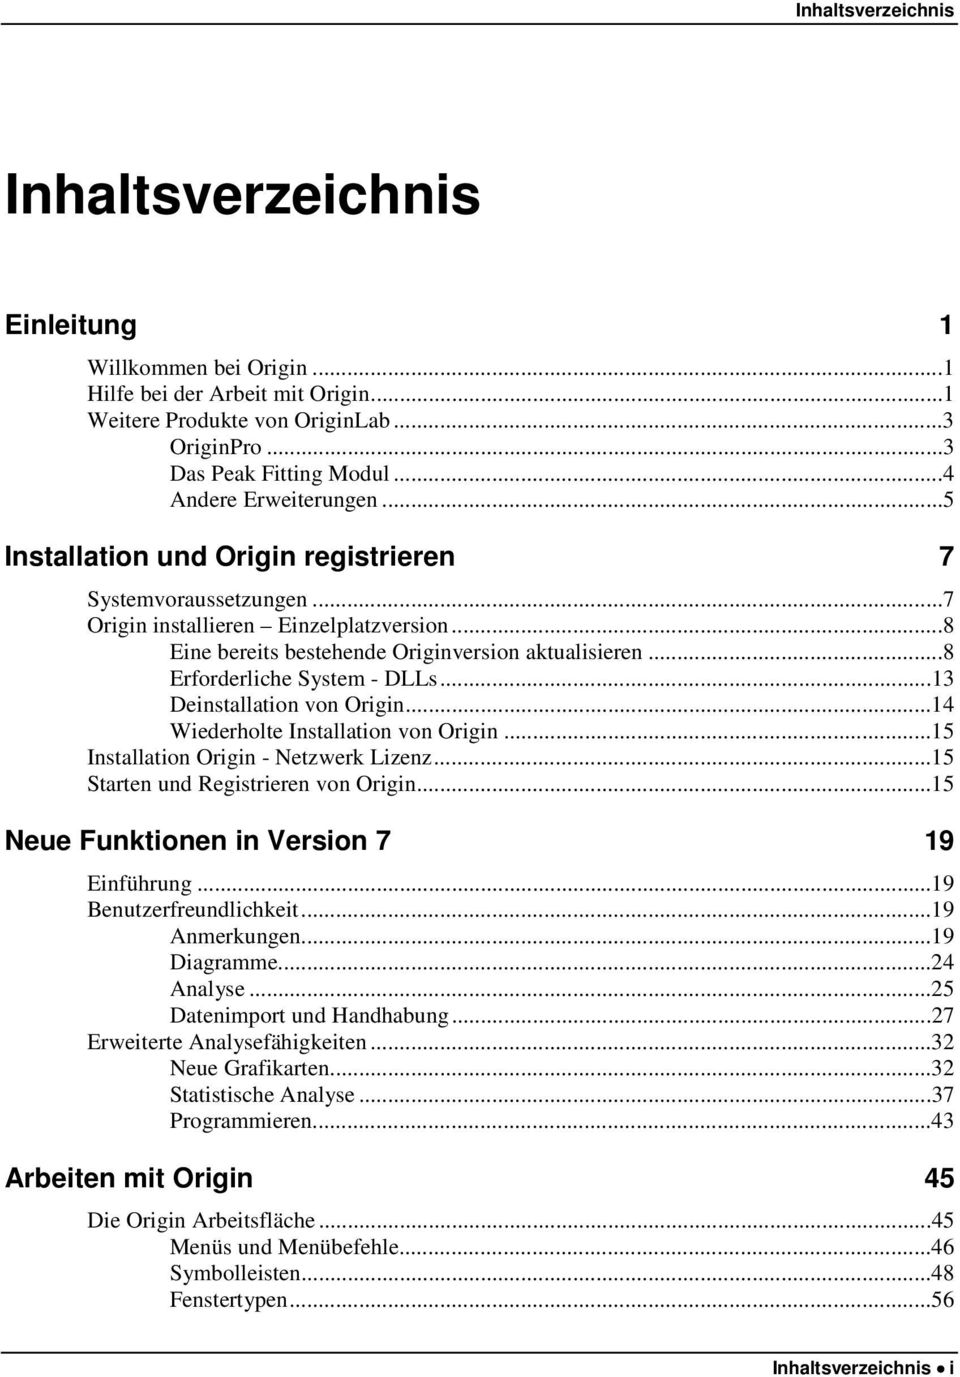 ..8 Erforderliche System - DLLs...13 Deinstallation von Origin...14 Wiederholte Installation von Origin...15 Installation Origin - Netzwerk Lizenz...15 Starten und Registrieren von Origin.